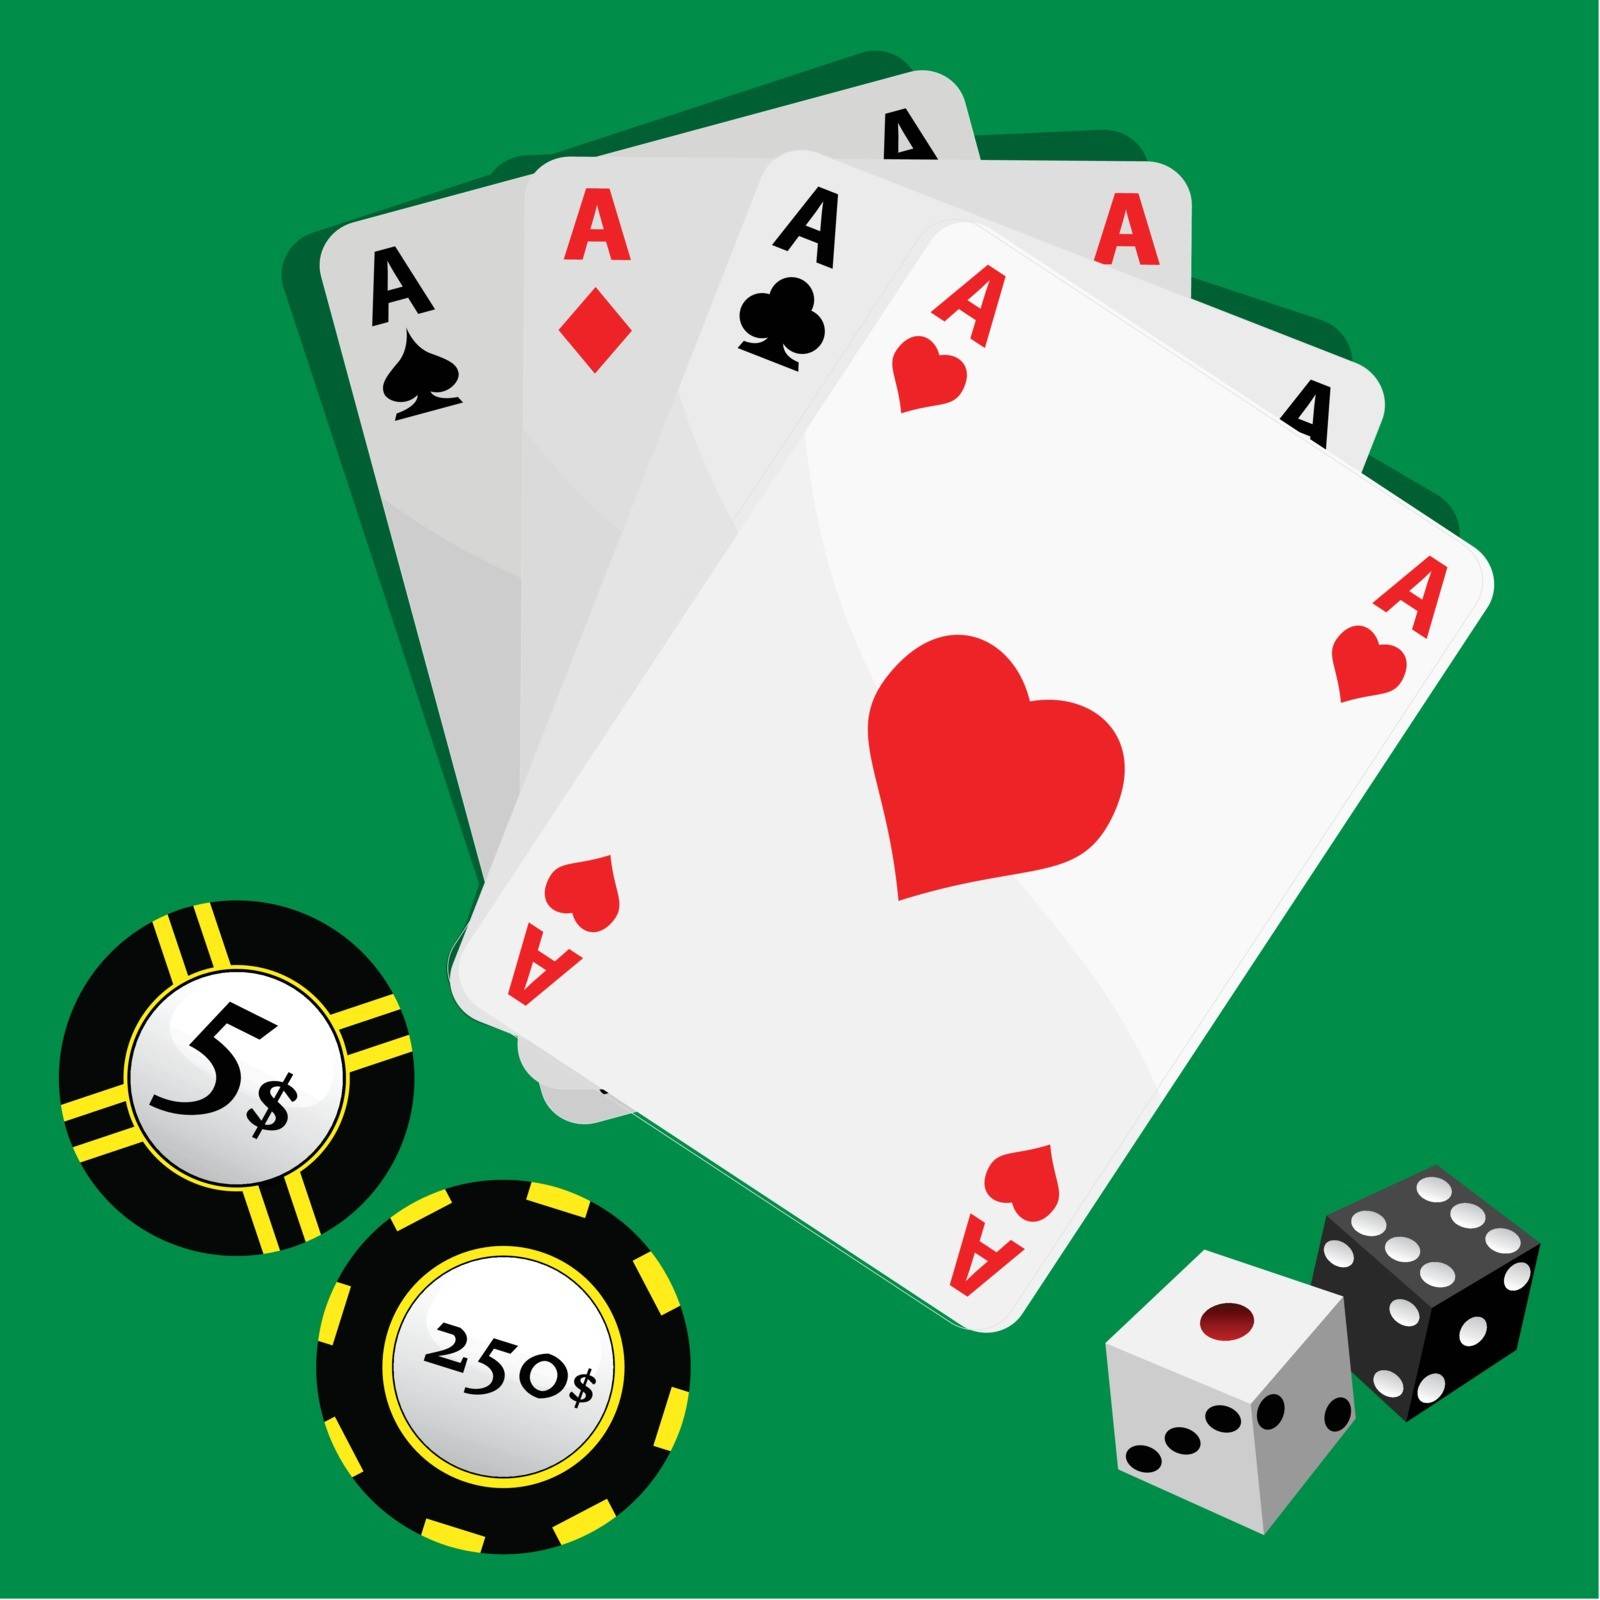 Play Cards by emirsimsek